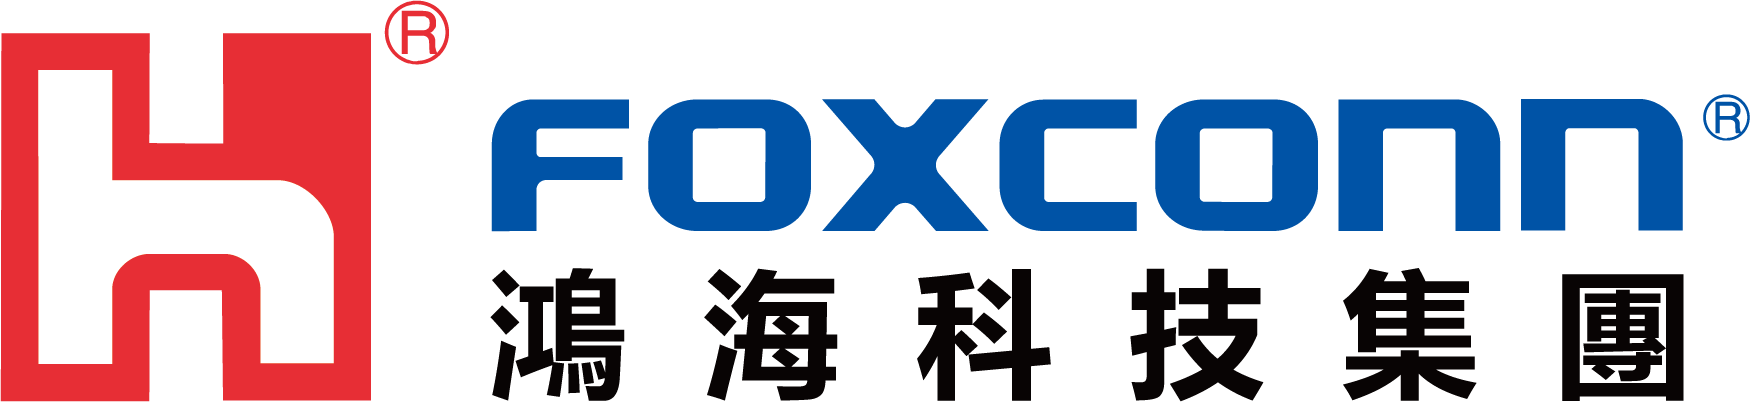 鴻海logo